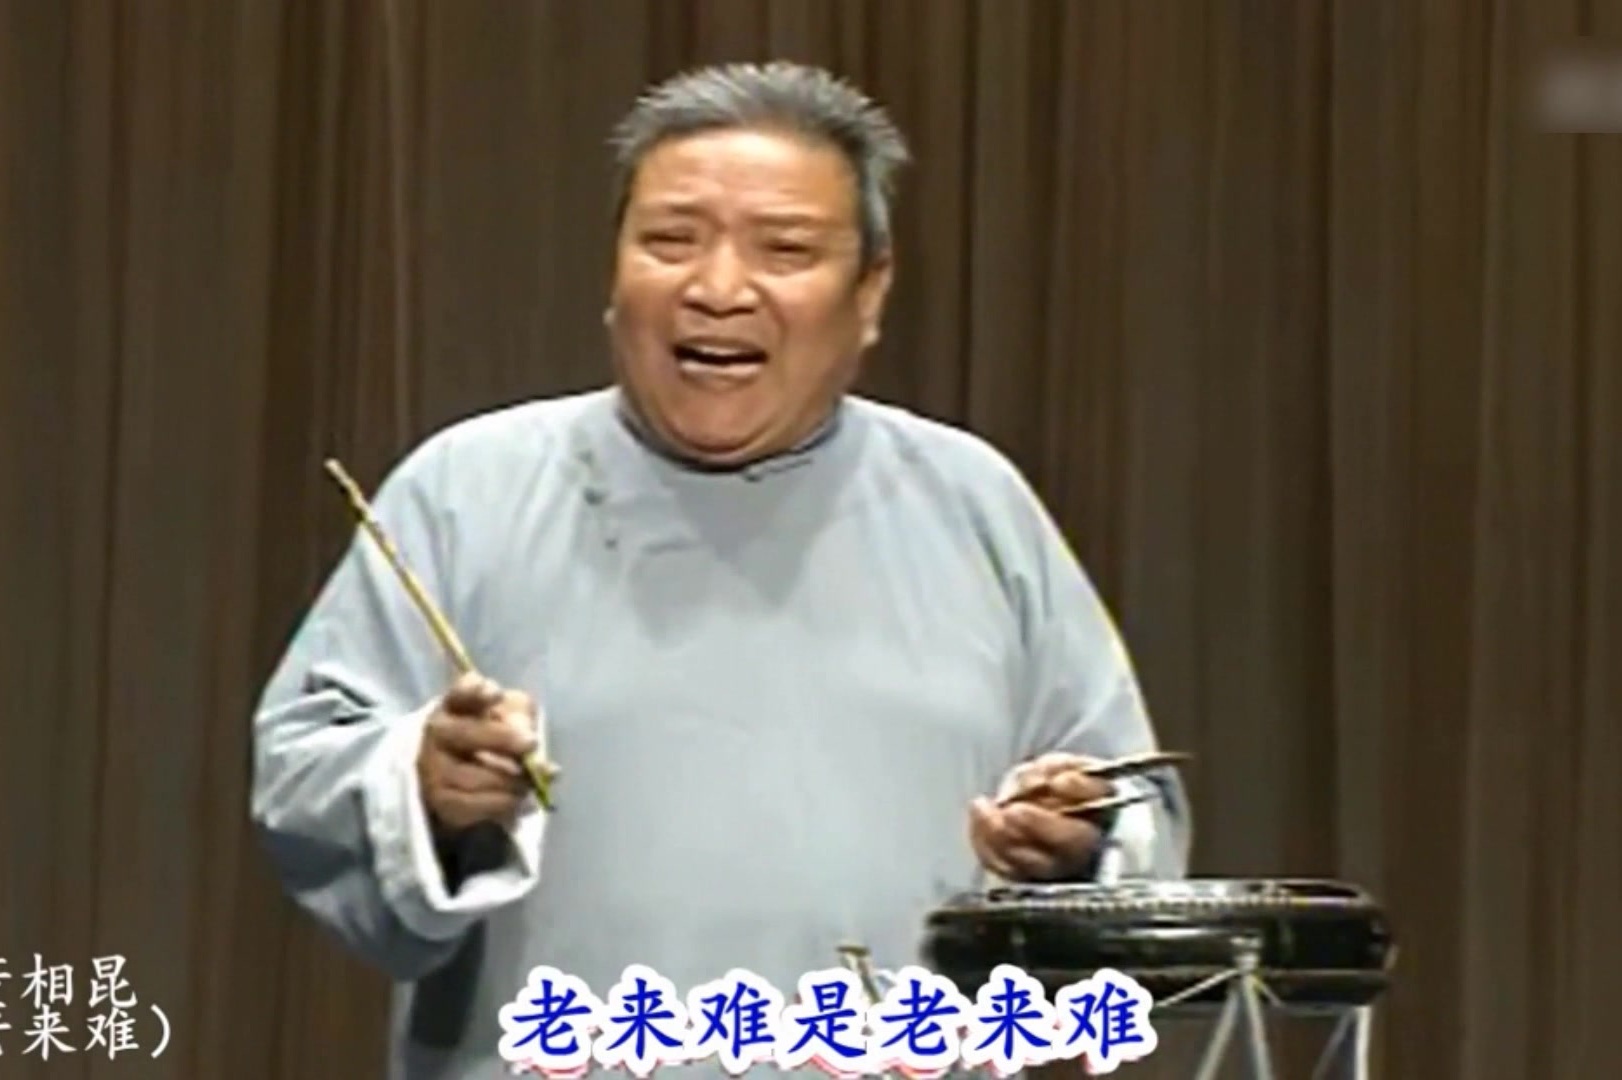 传统曲艺:京东大鼓《老来难》,董湘昆老先生